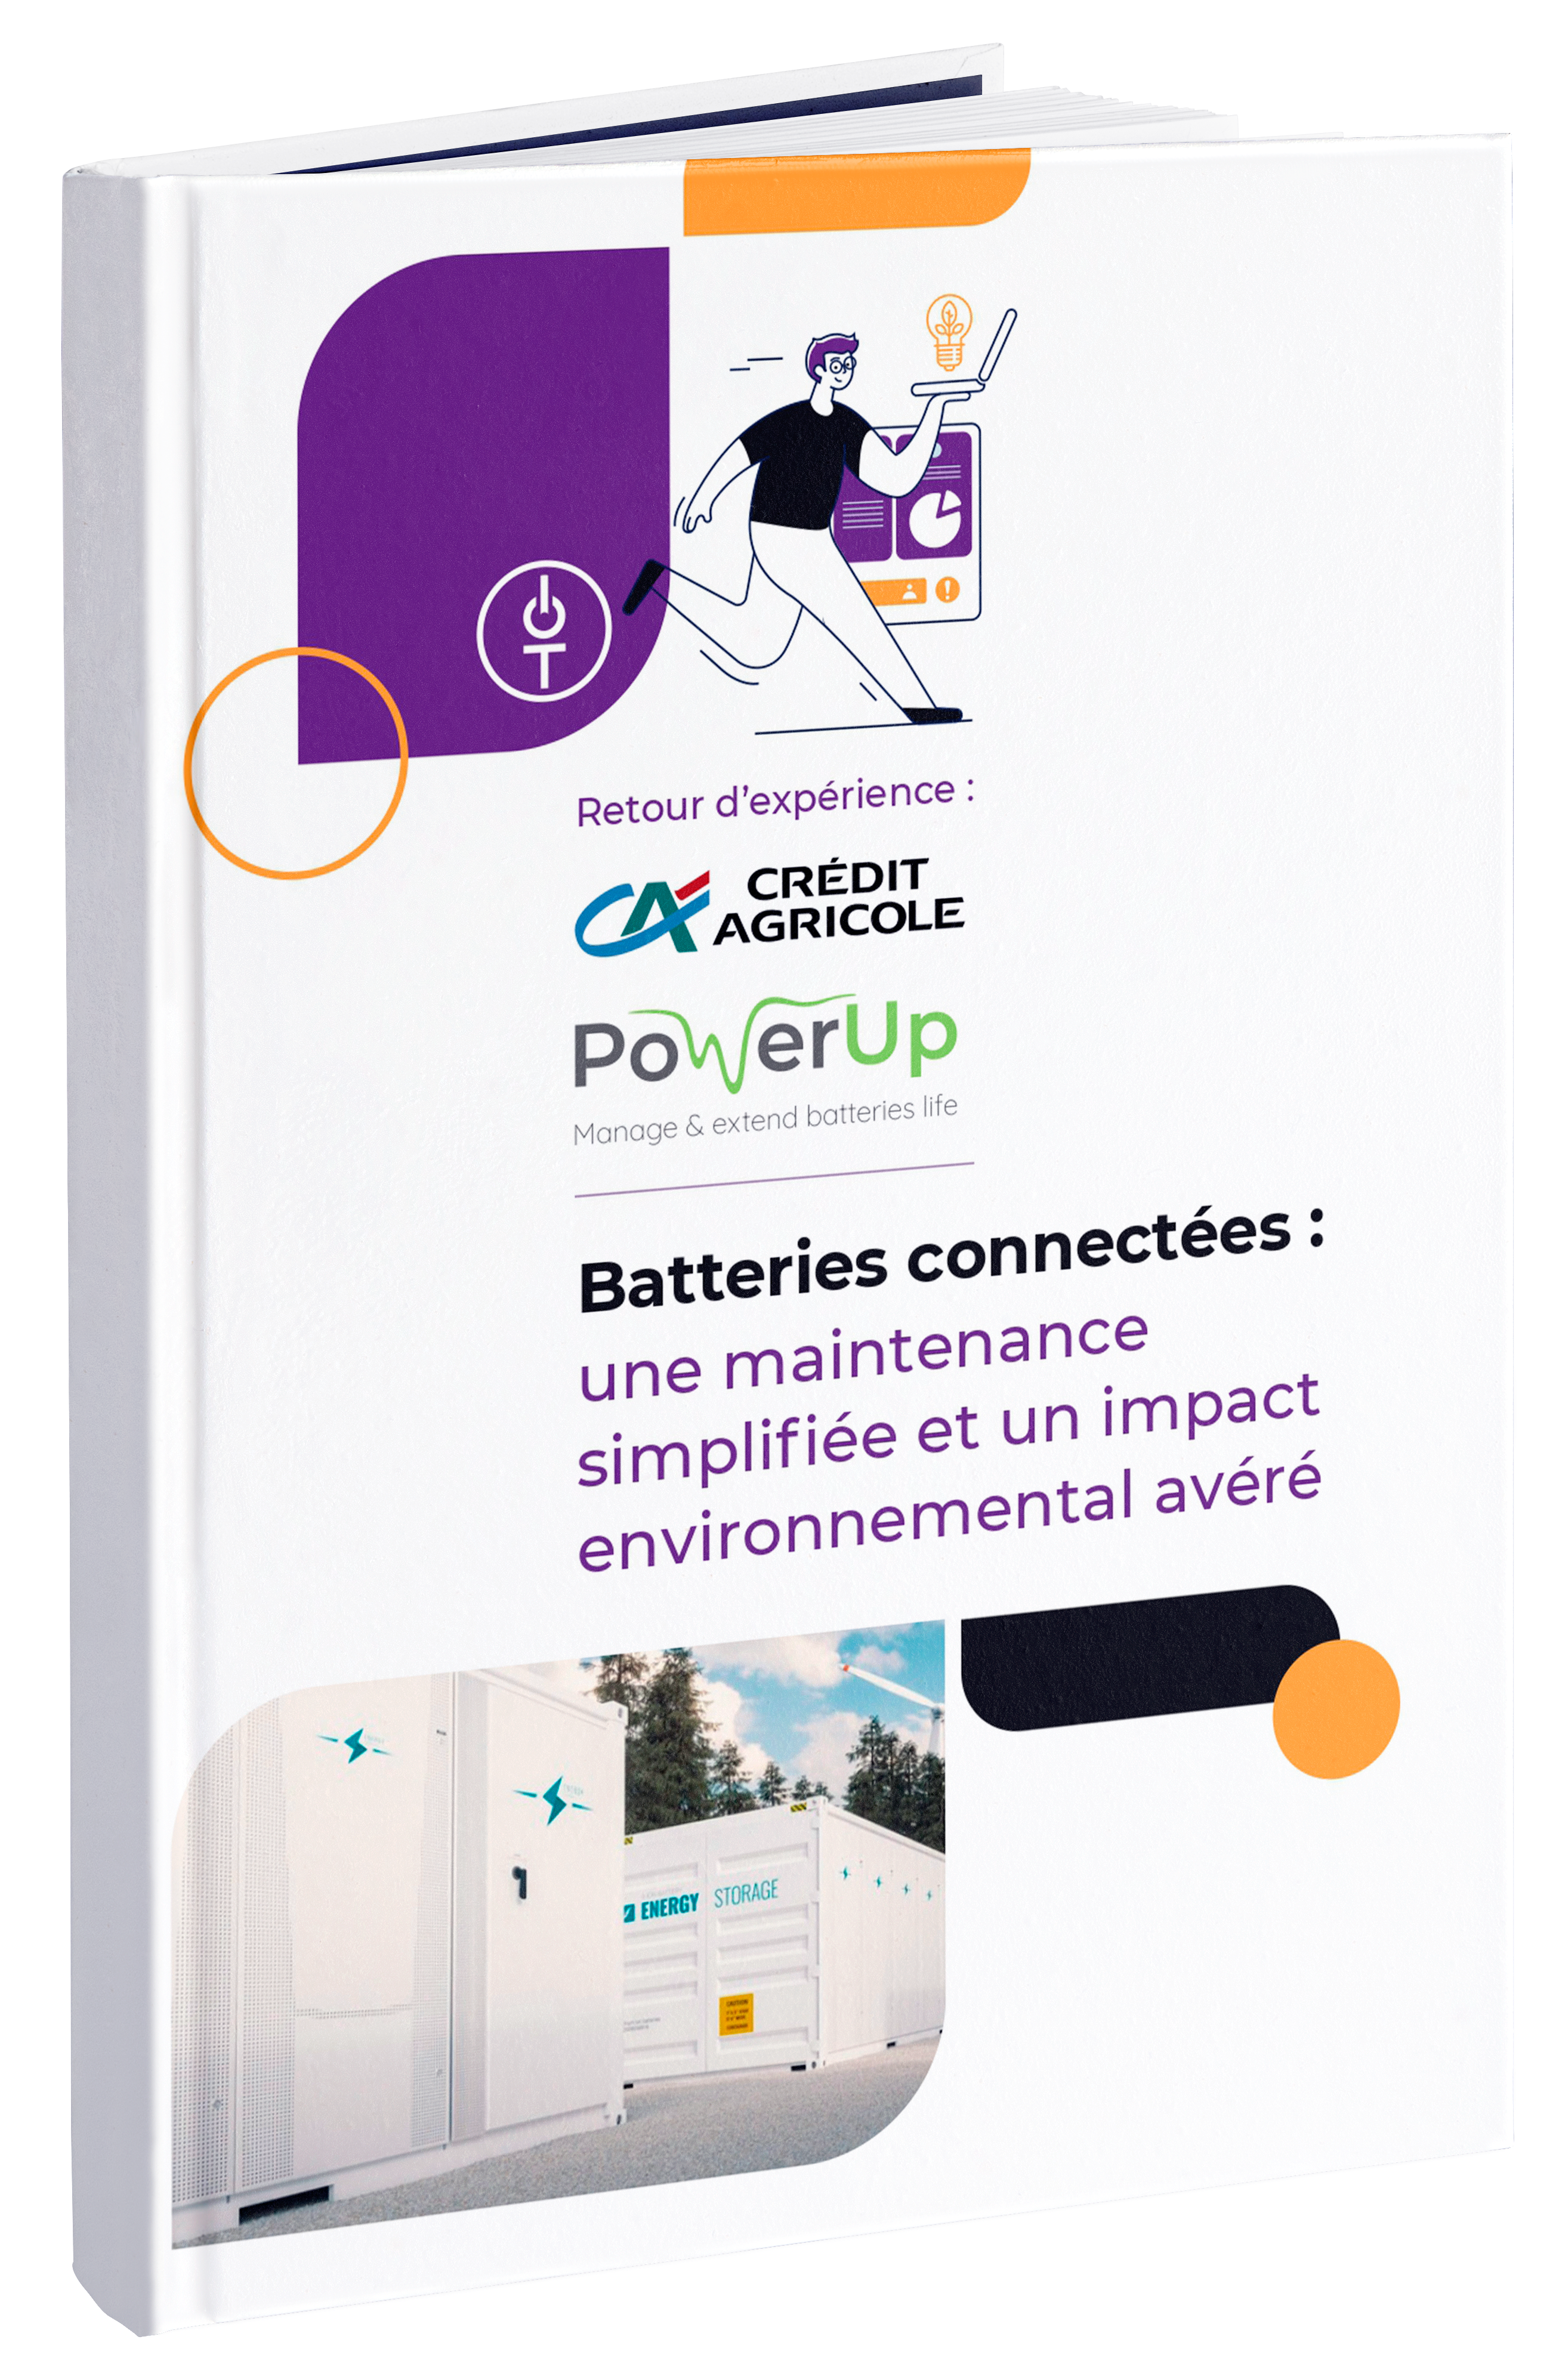 Batteries connectées - une maintenance simplfiée et un impact environnemental avéré _ Crédit Agricole & PowerUp